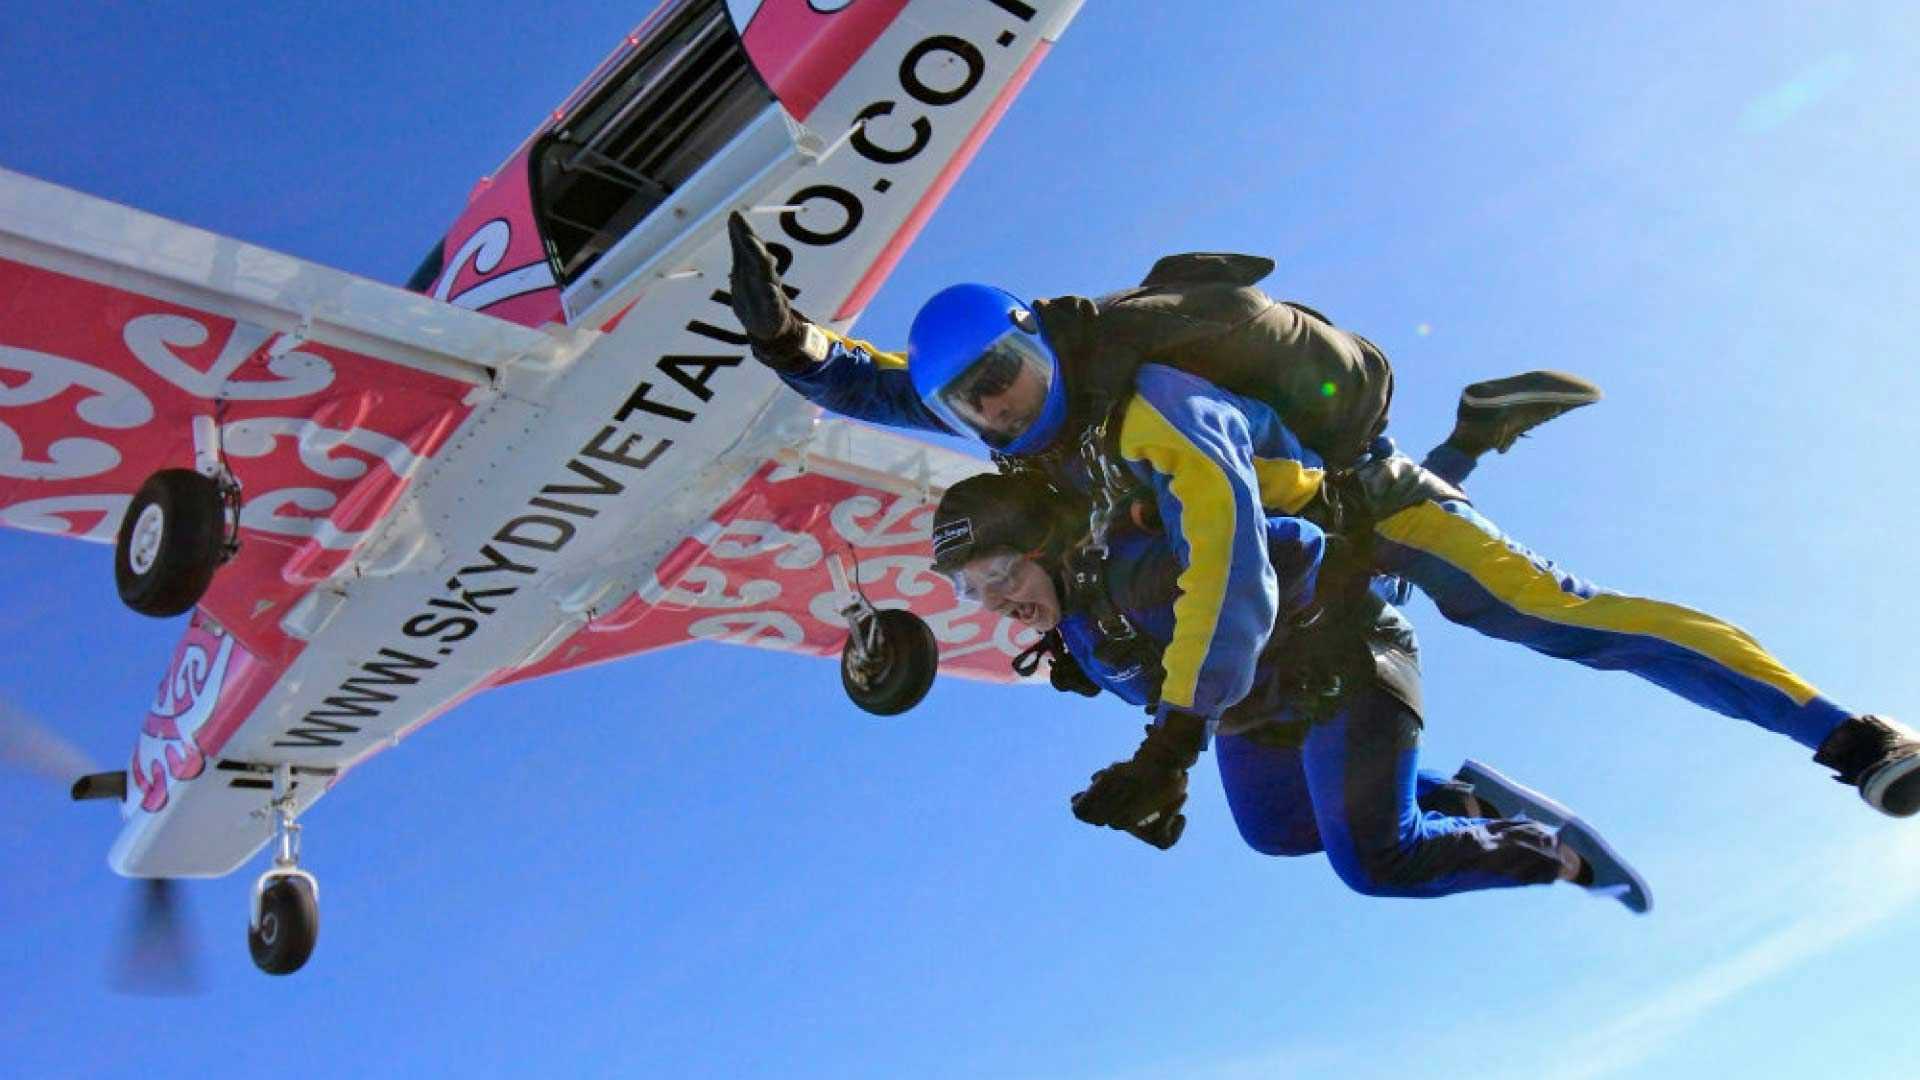 Tandem skydiving in Taupo